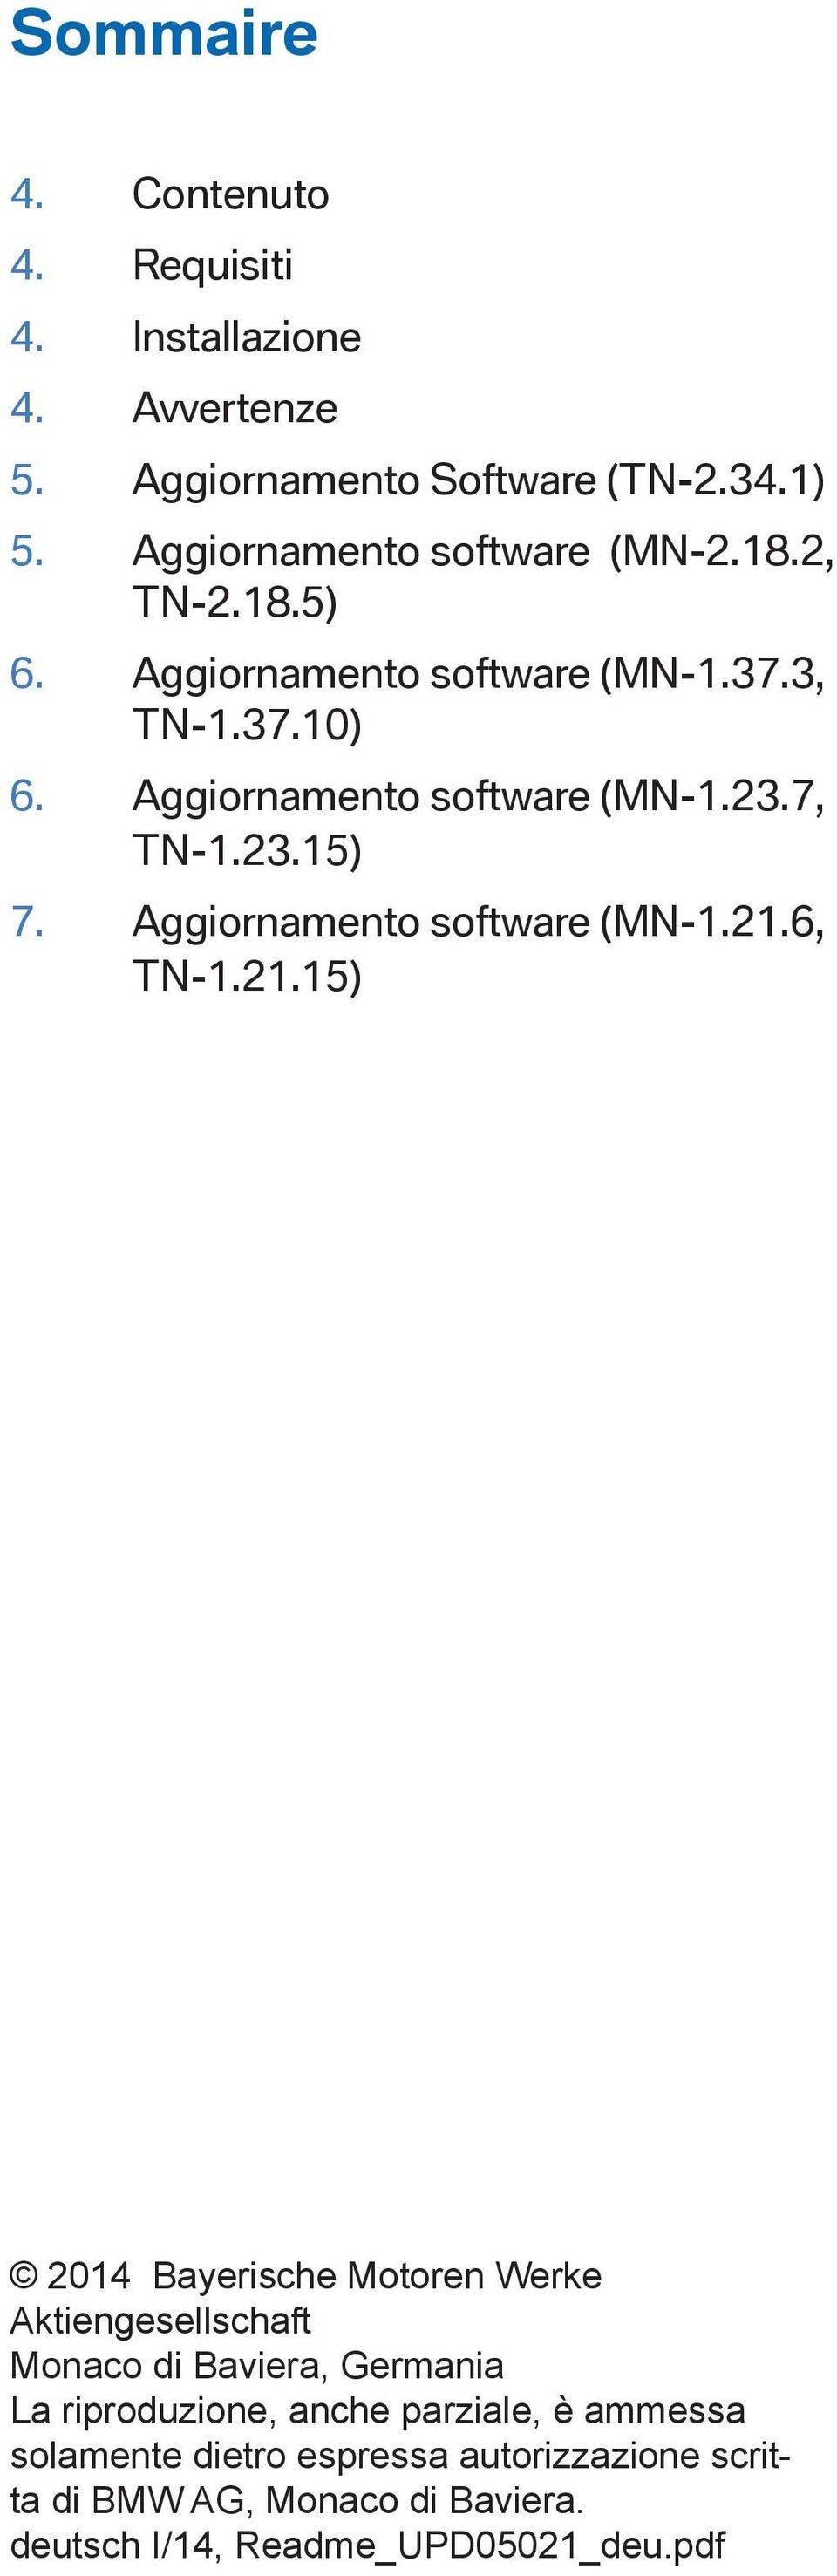 Aggiornamento software (MN-1.21.